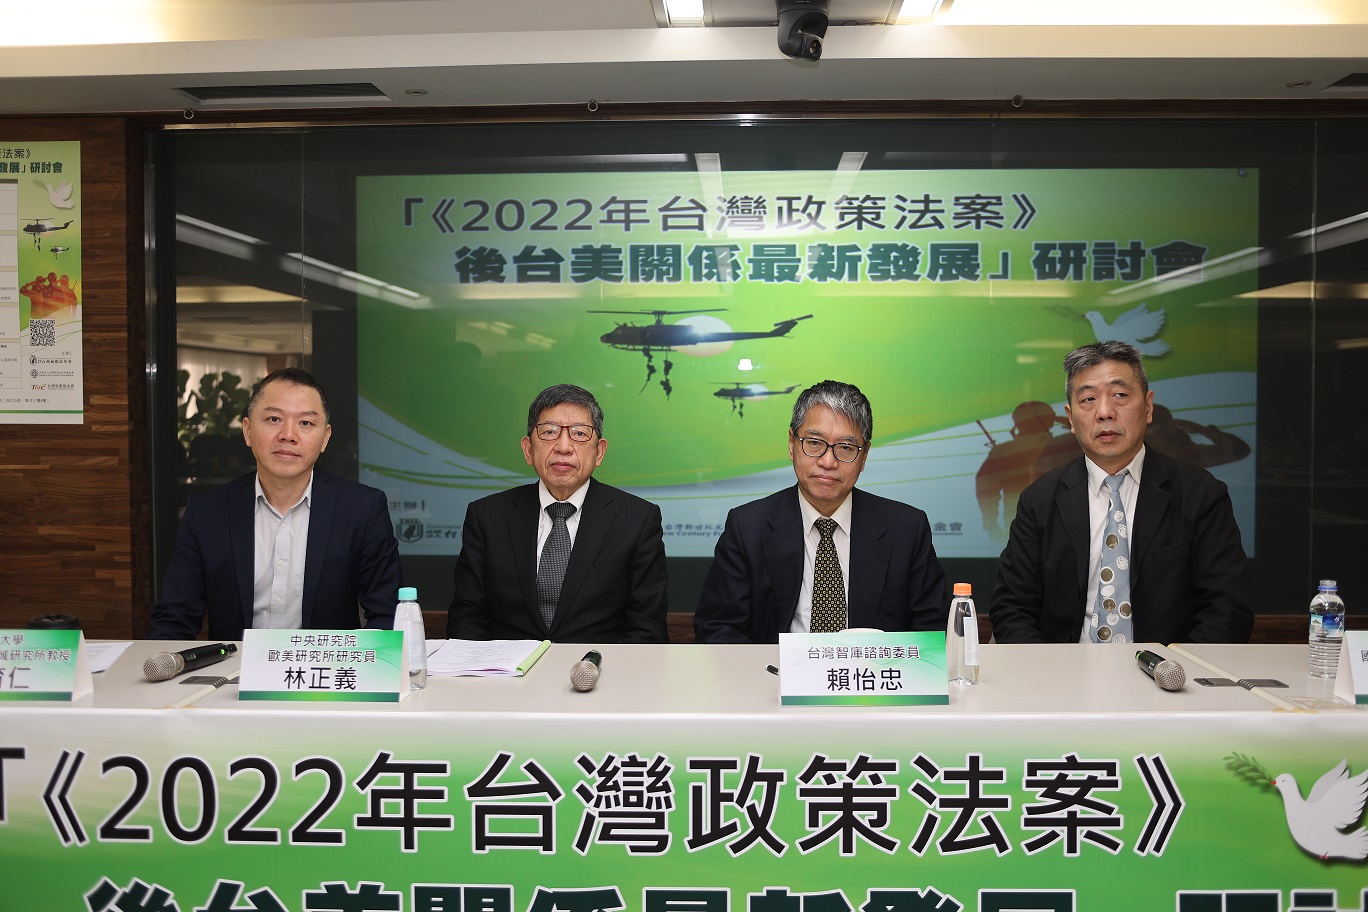 「《2022年台灣政策法案》後台美關係最新發展」研討會